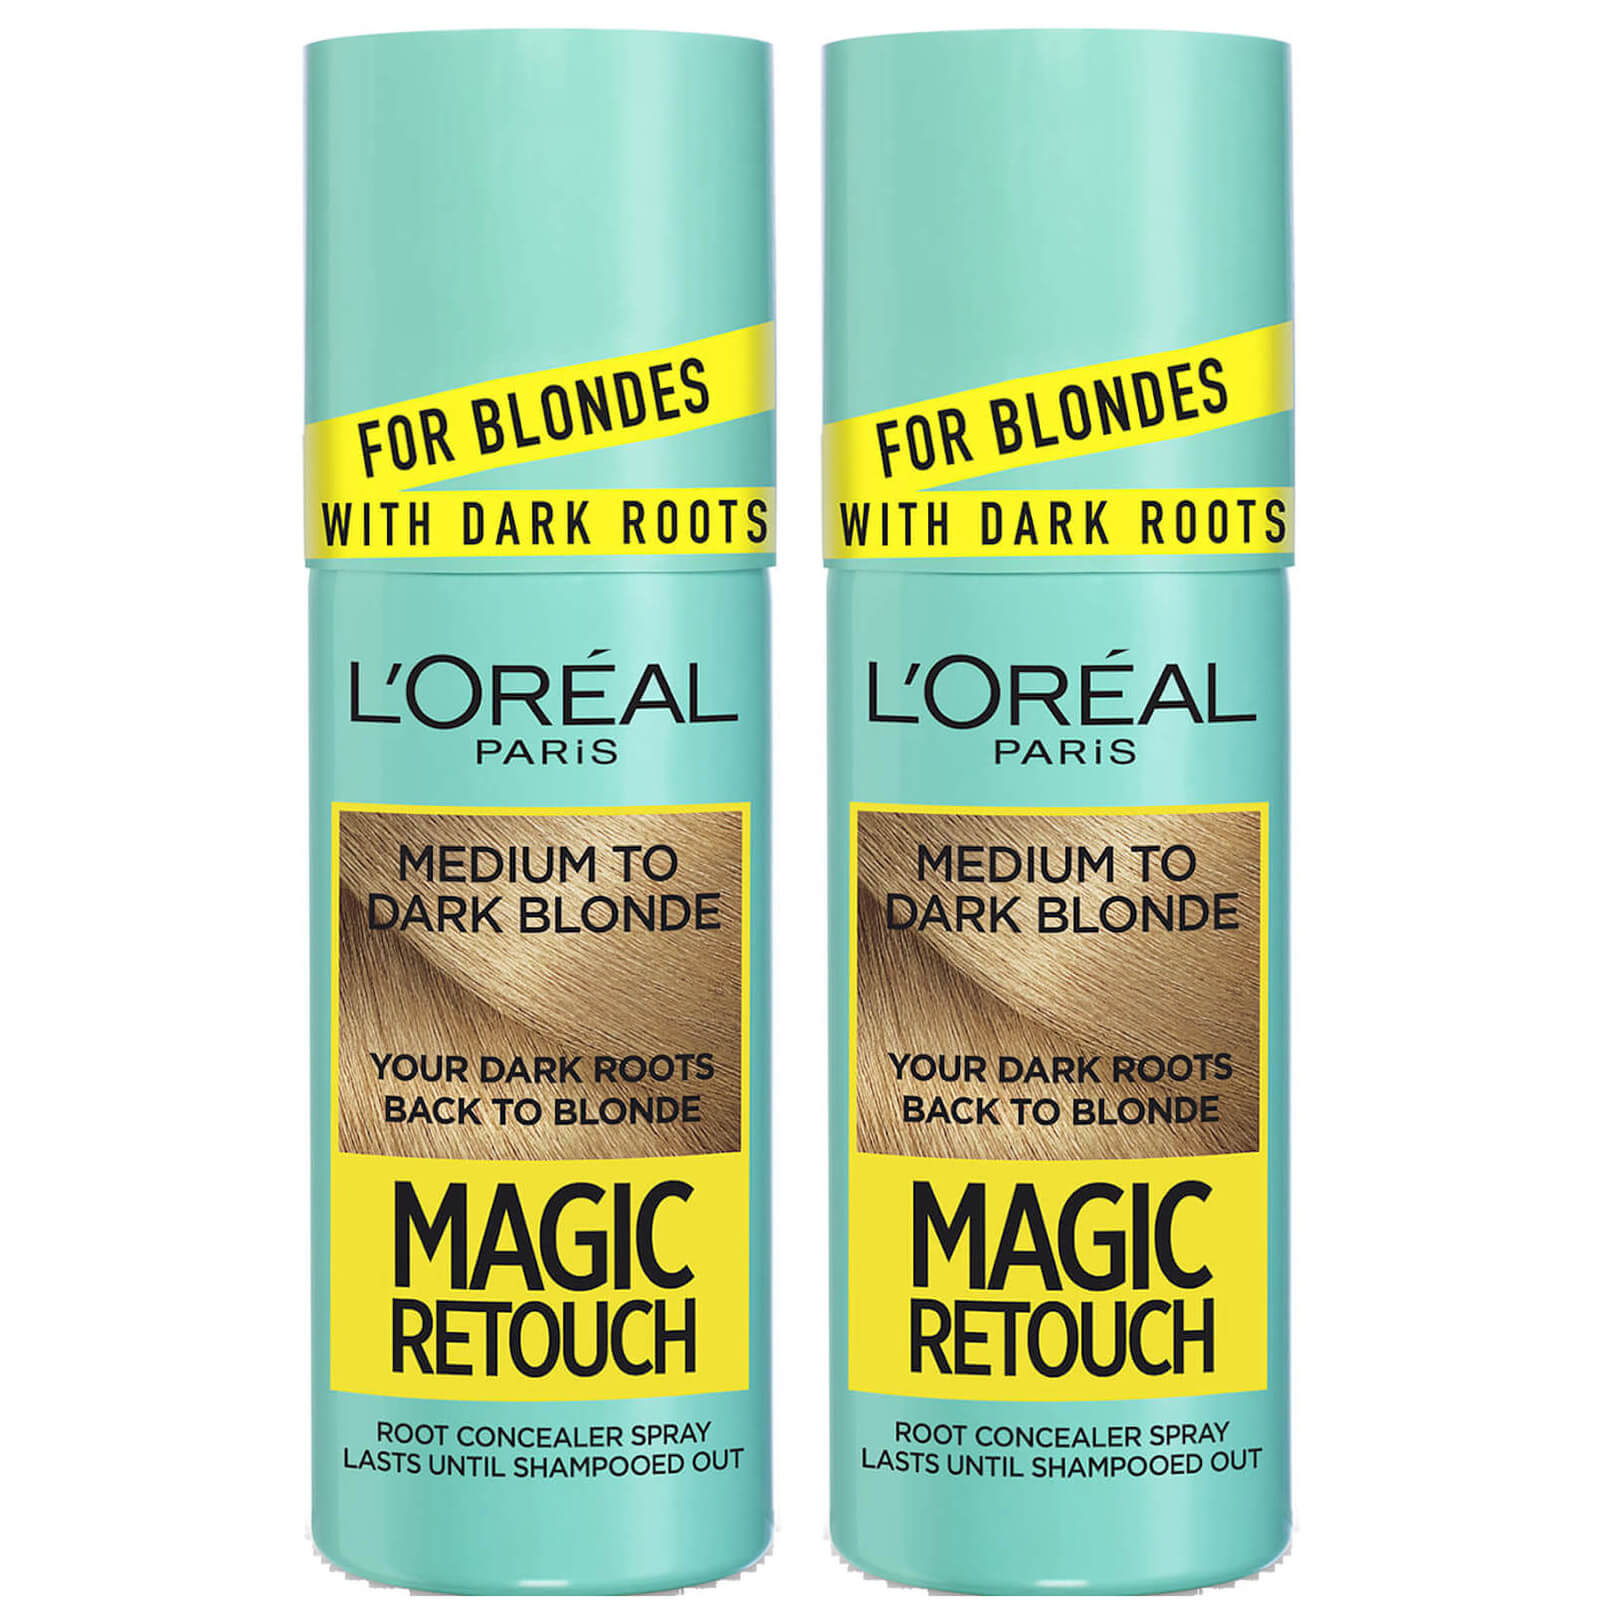 L'Oréal Paris Magic Retouch Medium to Dark Blonde Root Concealer Spray Duo Pack